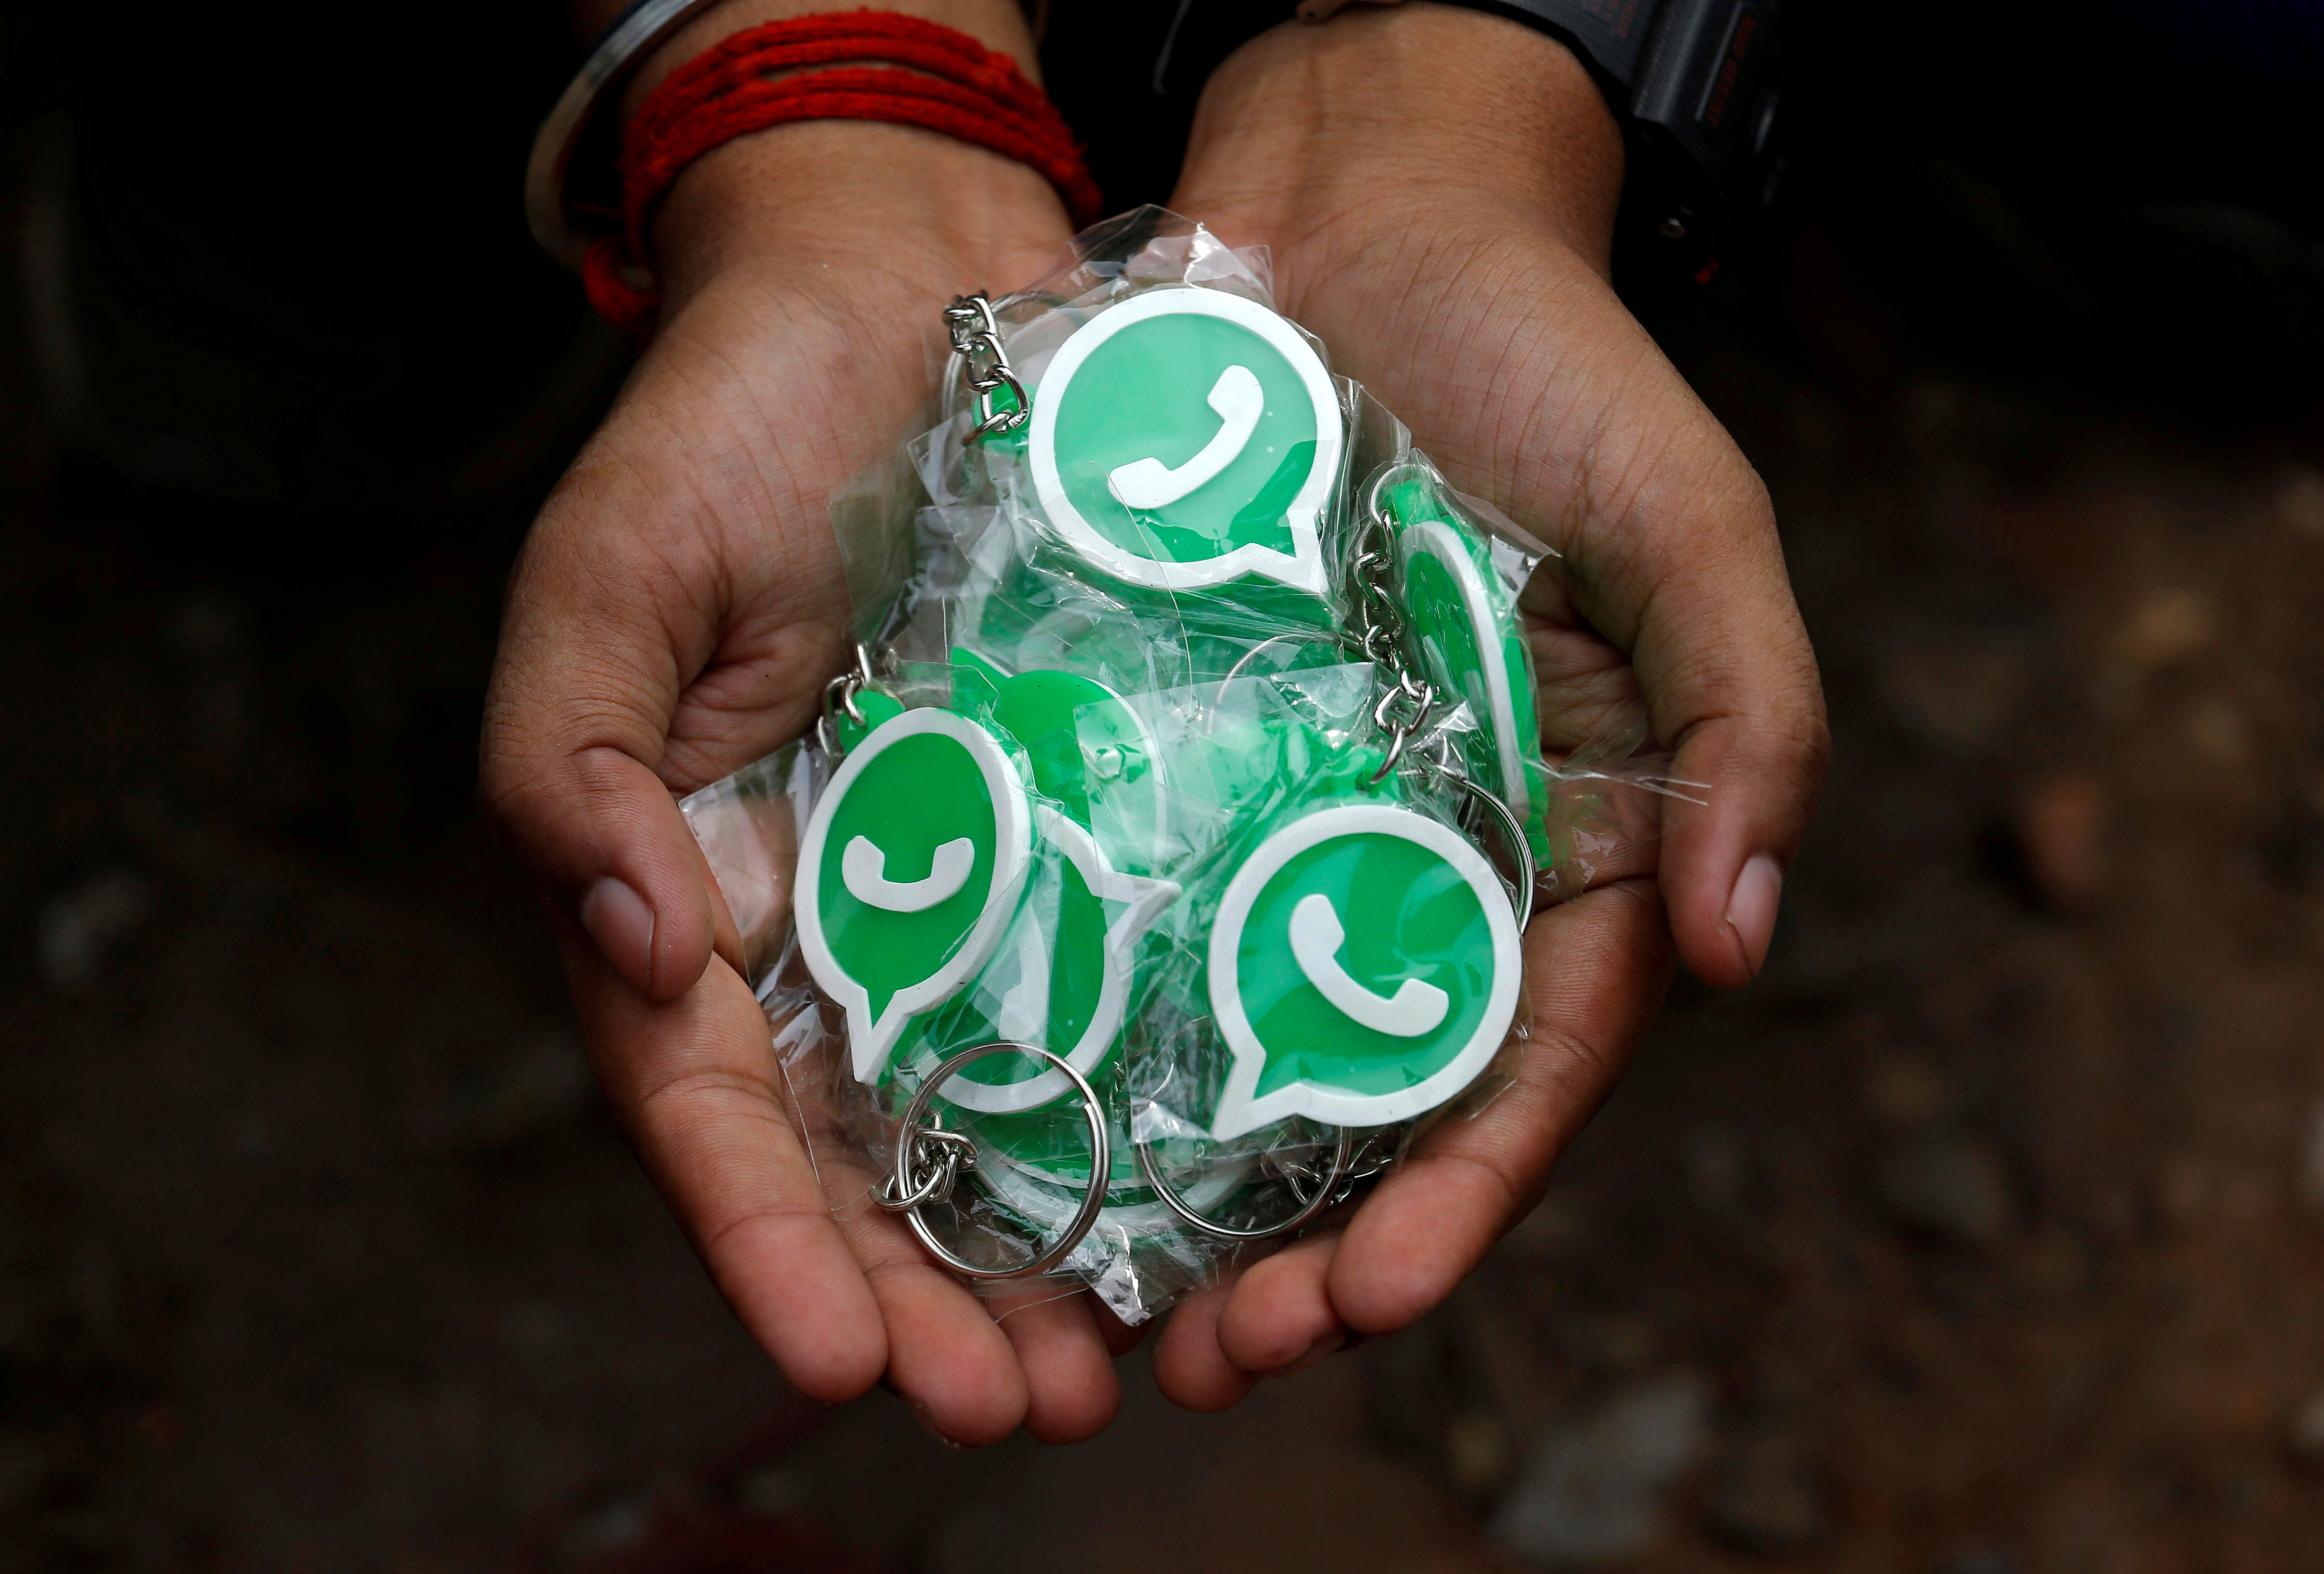 Con más de 2.000 millones de usuarios a nivel mundial, WhatsApp es patrón entre los mensajeros móviles.